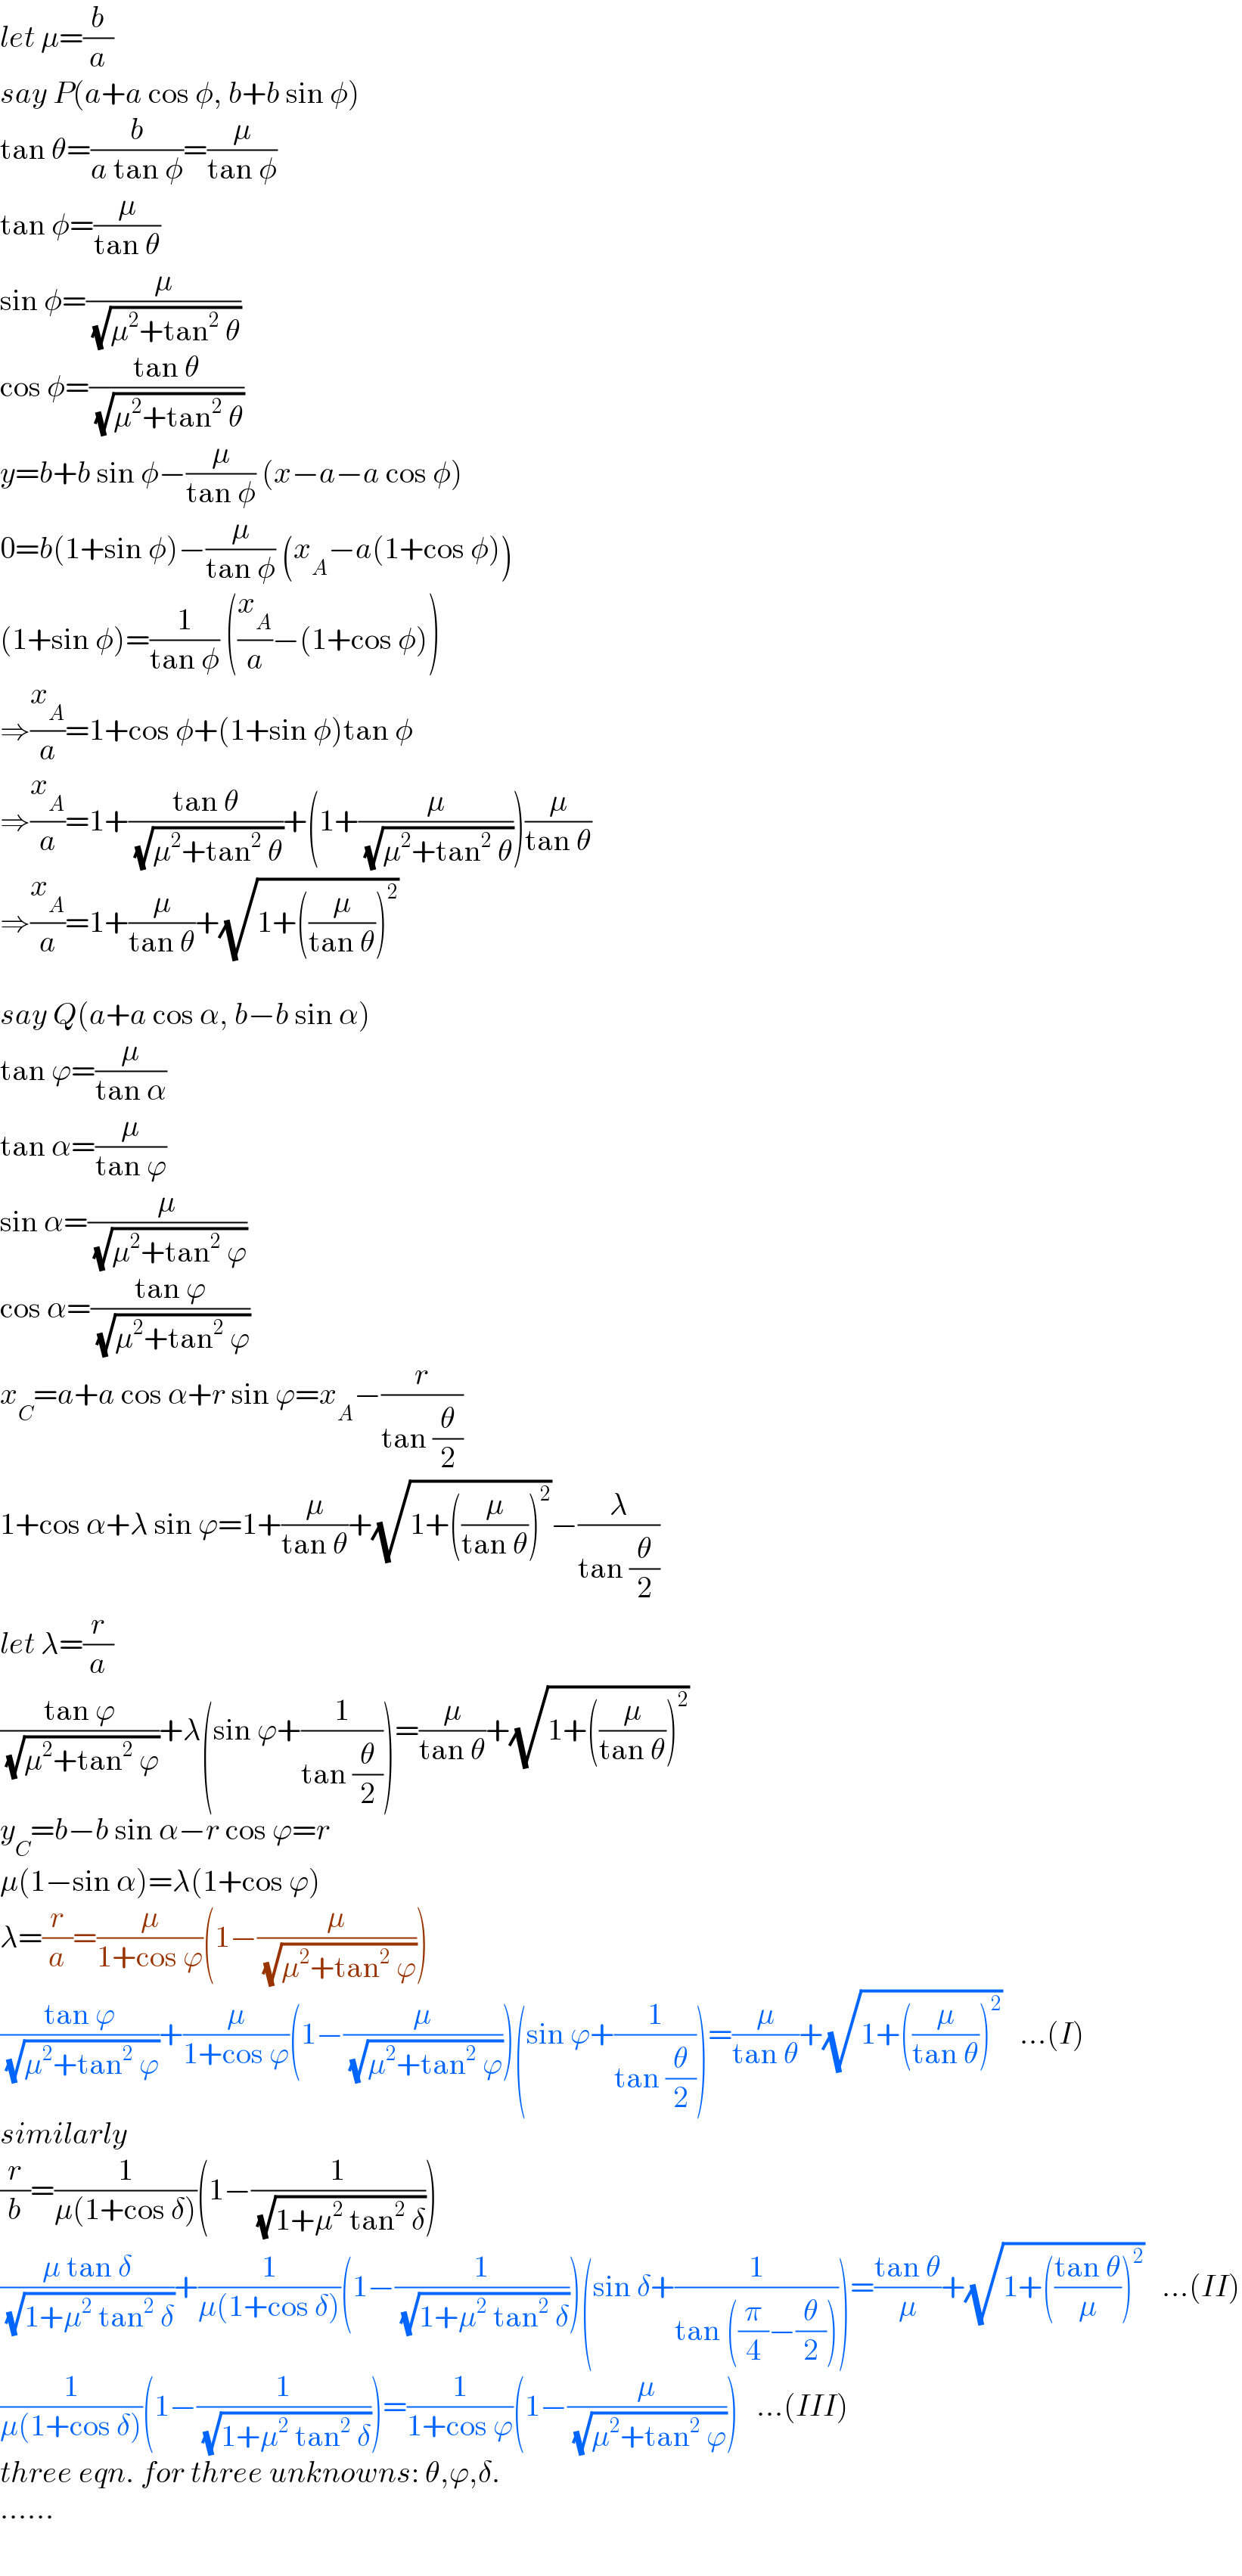 let μ=(b/a)  say P(a+a cos φ, b+b sin φ)  tan θ=(b/(a tan φ))=(μ/(tan φ))  tan φ=(μ/(tan θ))  sin φ=(μ/( (√(μ^2 +tan^2  θ))))  cos φ=((tan θ)/( (√(μ^2 +tan^2  θ))))  y=b+b sin φ−(μ/(tan φ)) (x−a−a cos φ)  0=b(1+sin φ)−(μ/(tan φ)) (x_A −a(1+cos φ))  (1+sin φ)=(1/(tan φ)) ((x_A /a)−(1+cos φ))  ⇒(x_A /a)=1+cos φ+(1+sin φ)tan φ  ⇒(x_A /a)=1+((tan θ)/( (√(μ^2 +tan^2  θ))))+(1+(μ/( (√(μ^2 +tan^2  θ)))))(μ/(tan θ))  ⇒(x_A /a)=1+(μ/(tan θ))+(√(1+((μ/(tan θ)))^2 ))    say Q(a+a cos α, b−b sin α)  tan ϕ=(μ/(tan α))  tan α=(μ/(tan ϕ))  sin α=(μ/( (√(μ^2 +tan^2  ϕ))))  cos α=((tan ϕ)/( (√(μ^2 +tan^2  ϕ))))  x_C =a+a cos α+r sin ϕ=x_A −(r/(tan (θ/2)))  1+cos α+λ sin ϕ=1+(μ/(tan θ))+(√(1+((μ/(tan θ)))^2 ))−(λ/(tan (θ/2)))  let λ=(r/a)  ((tan ϕ)/( (√(μ^2 +tan^2  ϕ))))+λ(sin ϕ+(1/(tan (θ/2))))=(μ/(tan θ))+(√(1+((μ/(tan θ)))^2 ))  y_C =b−b sin α−r cos ϕ=r  μ(1−sin α)=λ(1+cos ϕ)  λ=(r/a)=(μ/(1+cos ϕ))(1−(μ/( (√(μ^2 +tan^2  ϕ)))))  ((tan ϕ)/( (√(μ^2 +tan^2  ϕ))))+(μ/(1+cos ϕ))(1−(μ/( (√(μ^2 +tan^2  ϕ)))))(sin ϕ+(1/(tan (θ/2))))=(μ/(tan θ))+(√(1+((μ/(tan θ)))^2 ))   ...(I)  similarly  (r/b)=(1/(μ(1+cos δ)))(1−(1/( (√(1+μ^2  tan^2  δ)))))  ((μ tan δ)/( (√(1+μ^2  tan^2  δ))))+(1/(μ(1+cos δ)))(1−(1/( (√(1+μ^2  tan^2  δ)))))(sin δ+(1/(tan ((π/4)−(θ/2)))))=((tan θ)/μ)+(√(1+(((tan θ)/μ))^2 ))   ...(II)  (1/(μ(1+cos δ)))(1−(1/( (√(1+μ^2  tan^2  δ)))))=(1/(1+cos ϕ))(1−(μ/( (√(μ^2 +tan^2  ϕ)))))   ...(III)  three eqn. for three unknowns: θ,ϕ,δ.  ......  